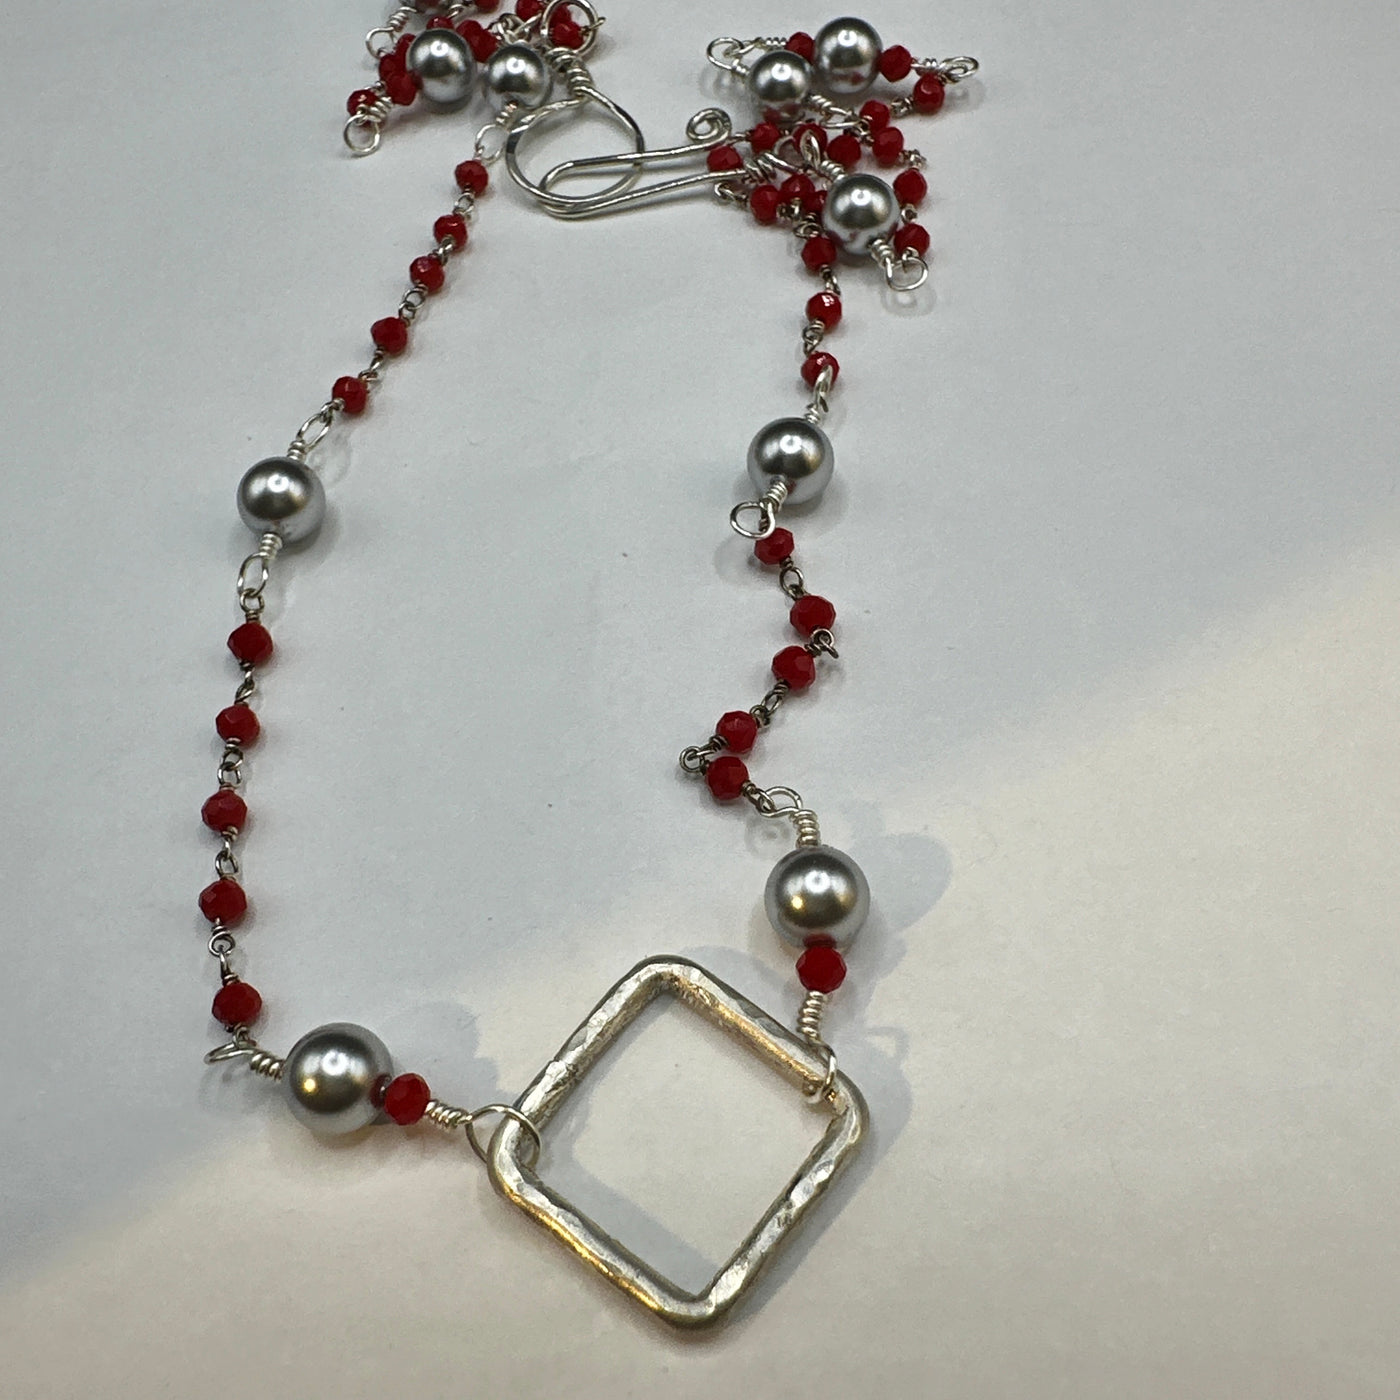 Halskette aus Silber 925 mit roten Perlen und hellgrauen Perlen und einem quadratischen Silbereinsatz als Mittelstück